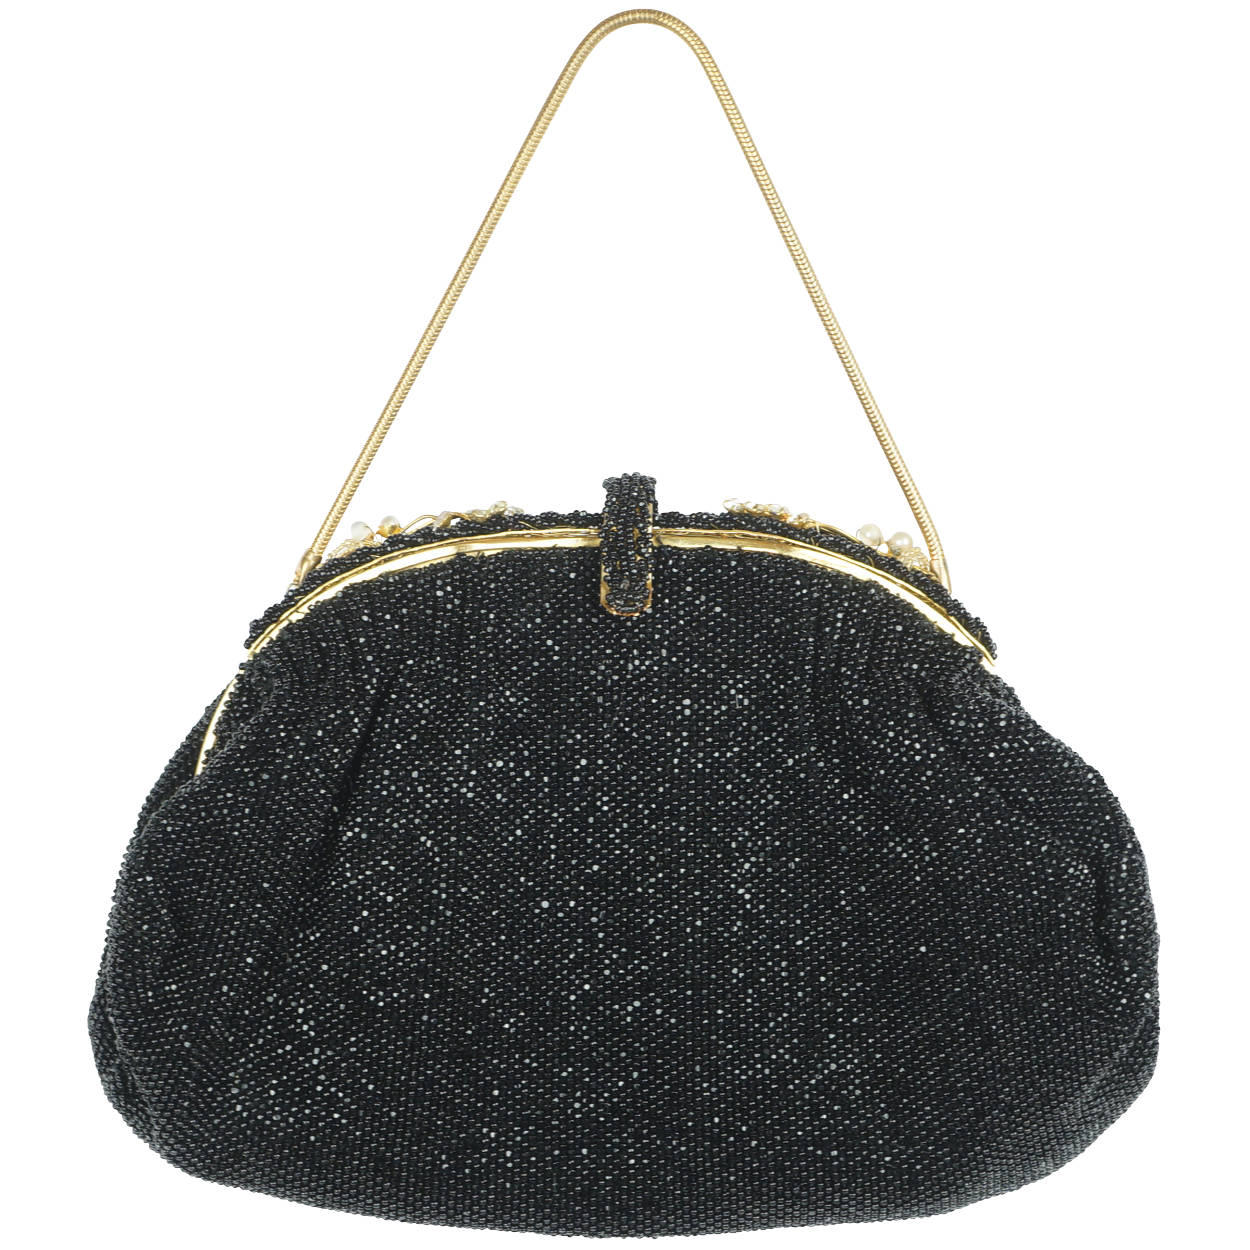 Vintage Beaded Purse, Black Evening Bag or Clutch.... - Depop